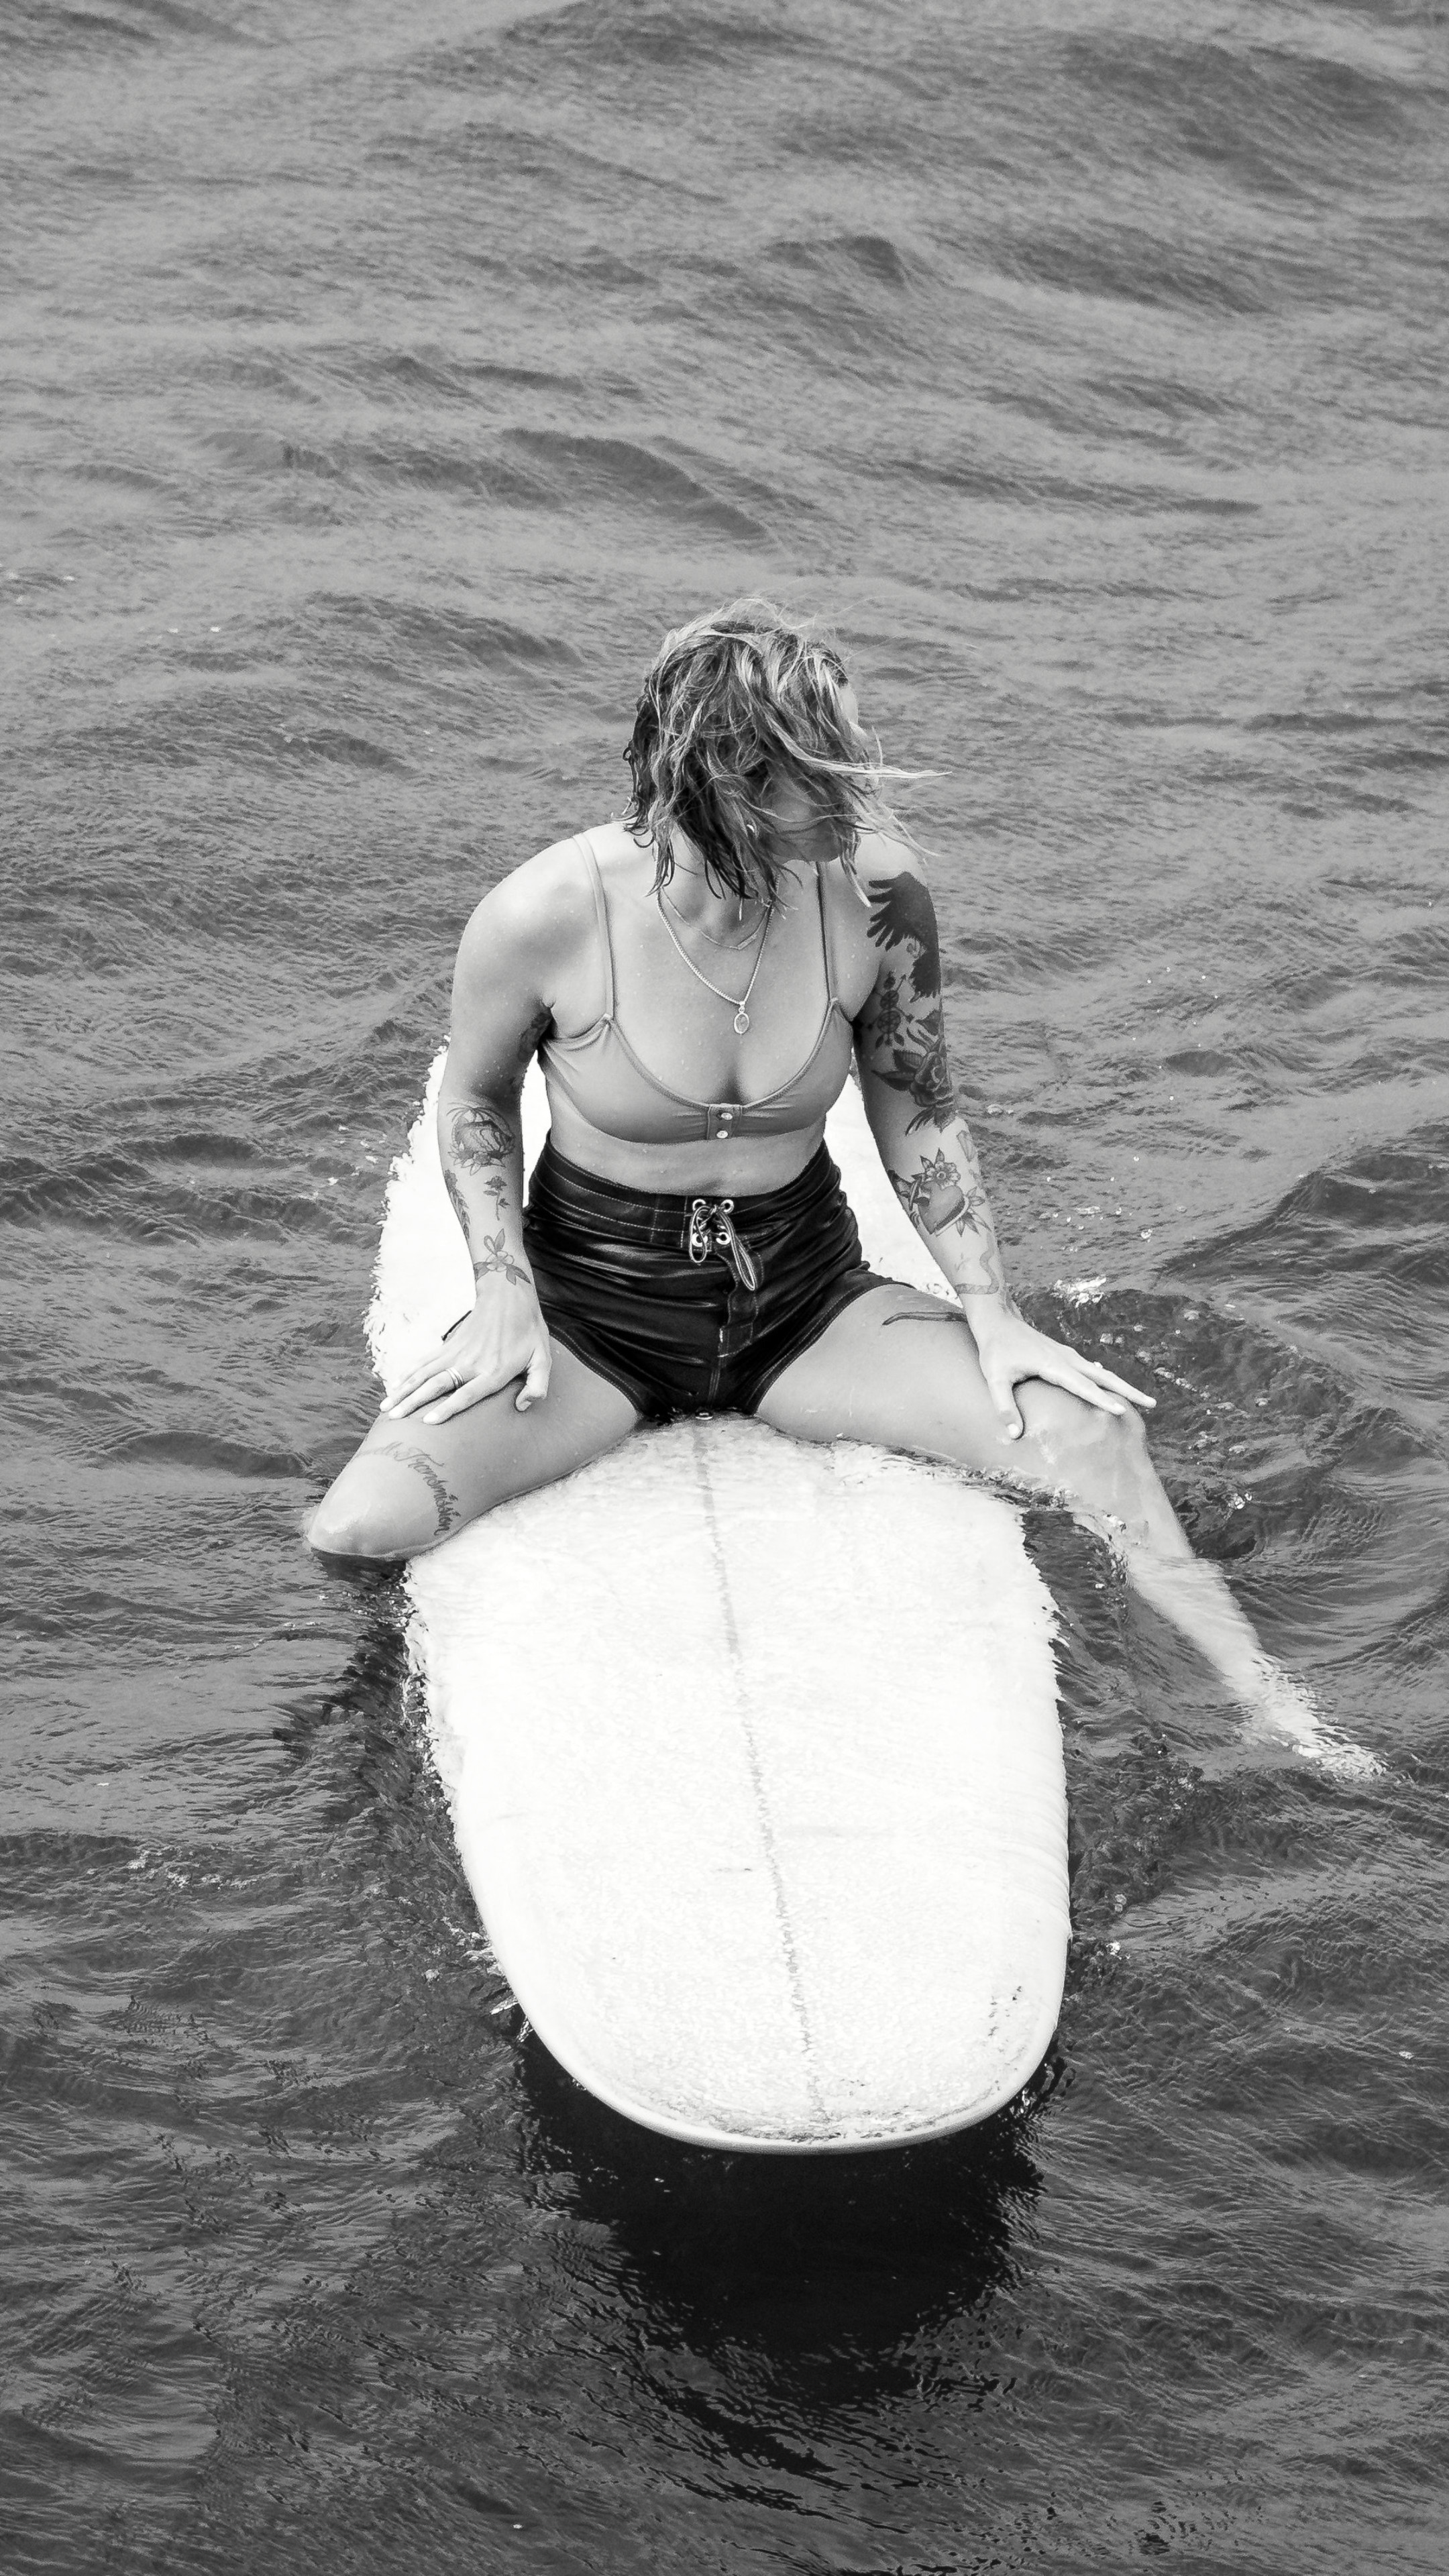 坐在冲浪板漂浮在海上的内衣欧美美女